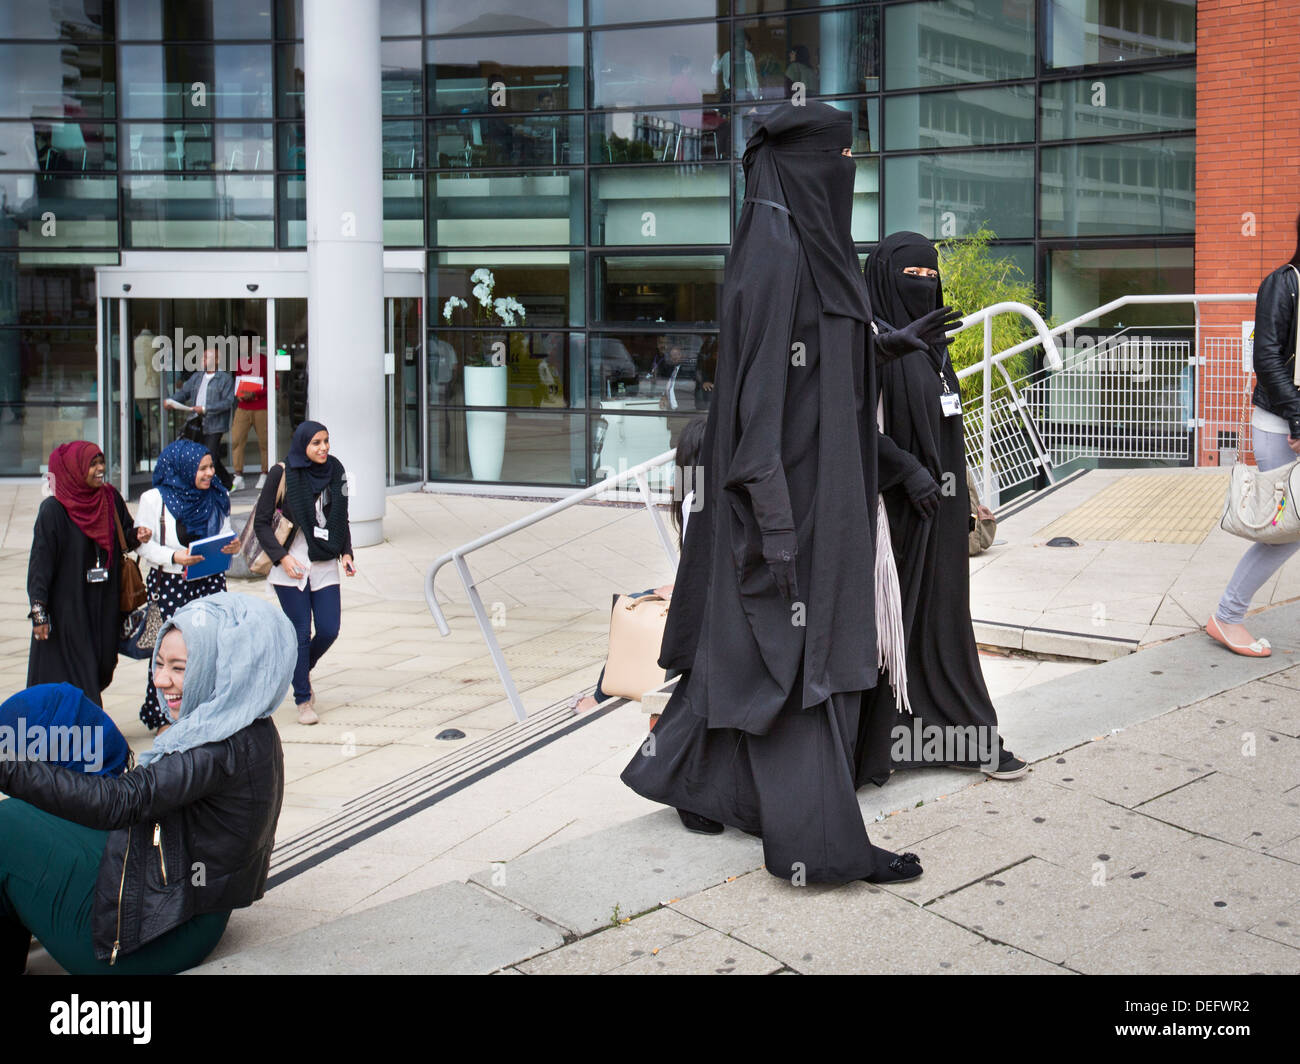 Zwei College-Studenten in Burkas gekleidet in Birmingham, Großbritannien. Sie sind Schüler am Metropolitan College in Birmingham. Stockfoto